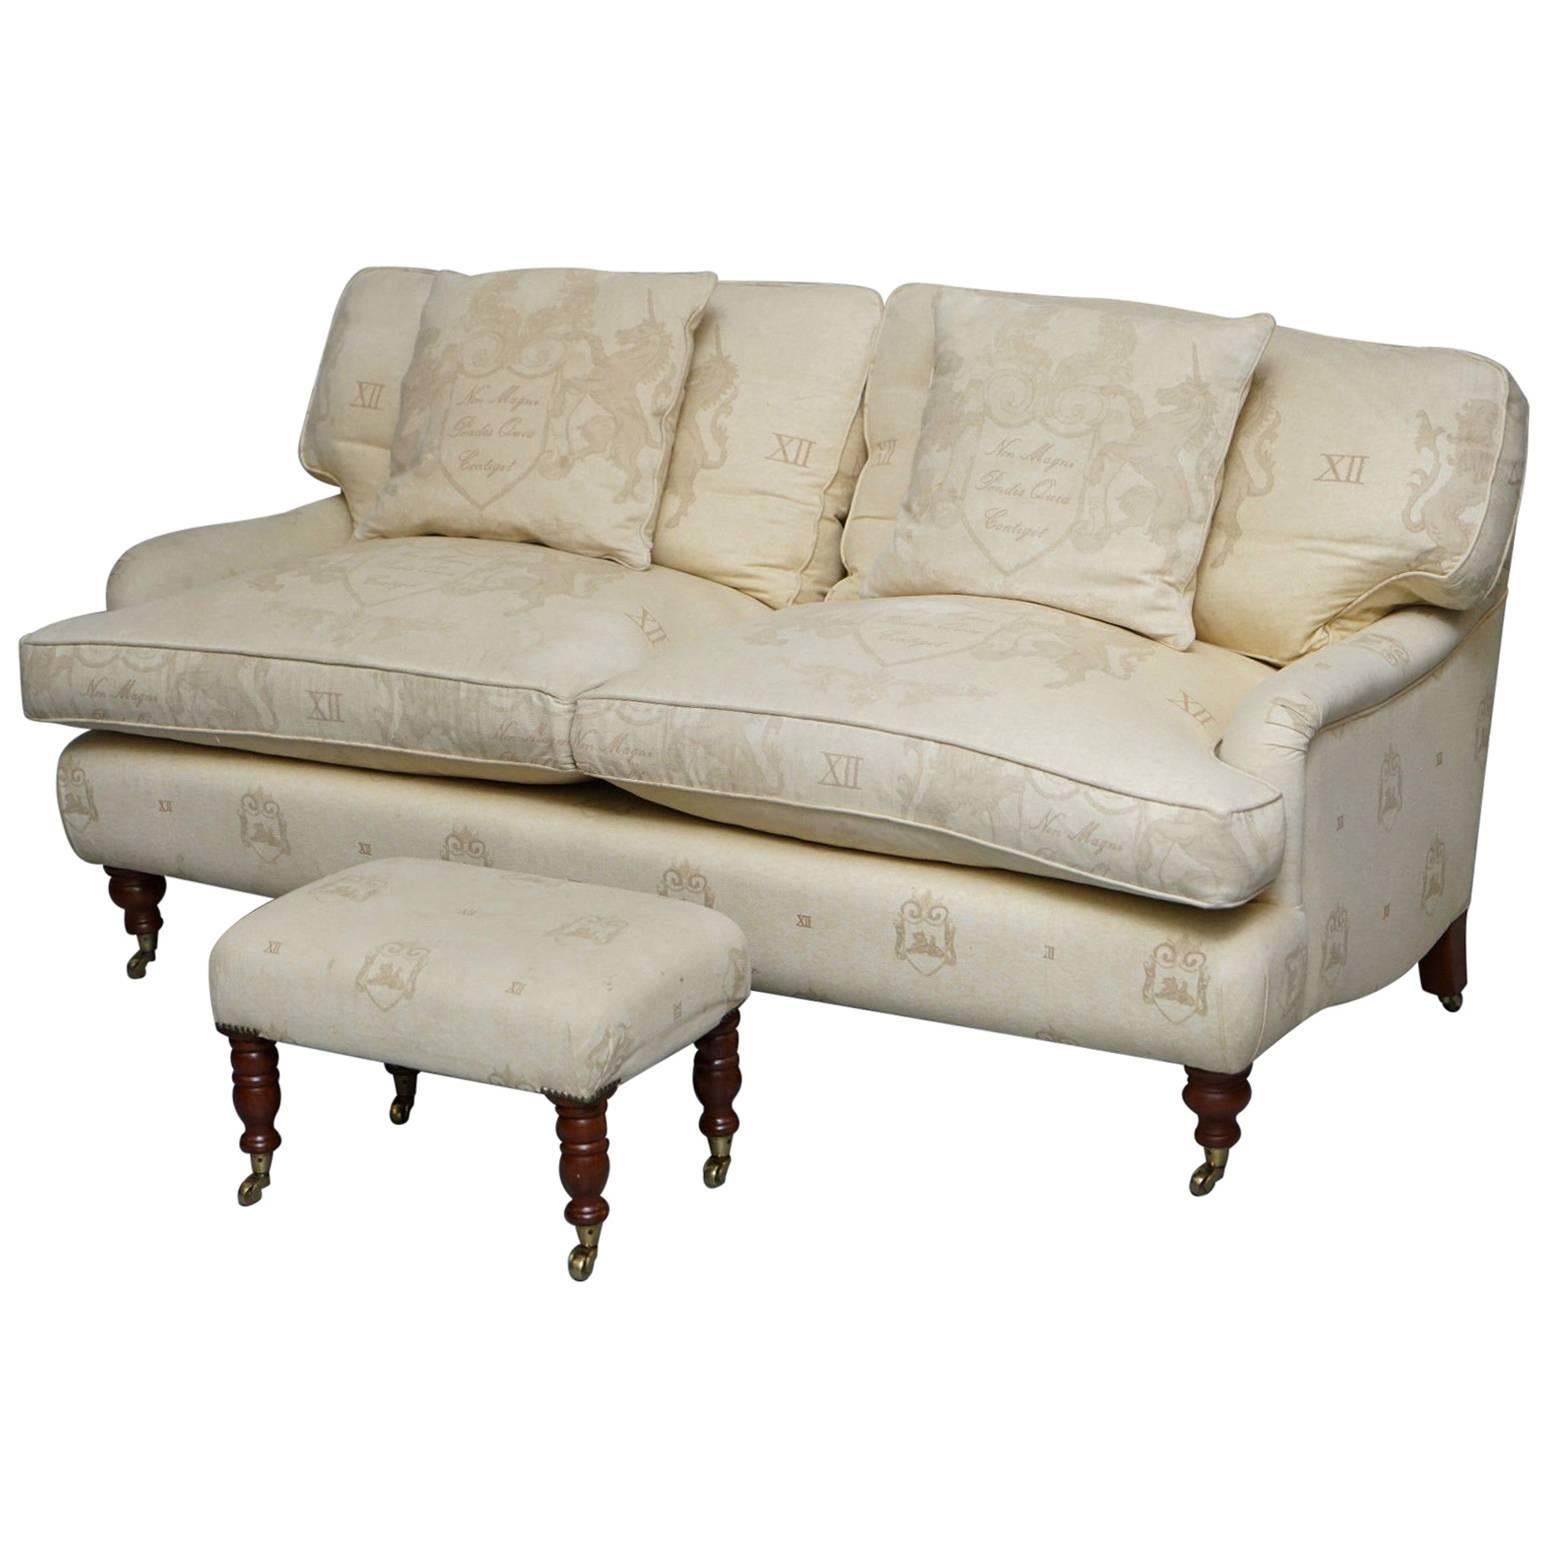 Andrew Martin Howard Style Sofa with Royal Magna Carta Upholstery